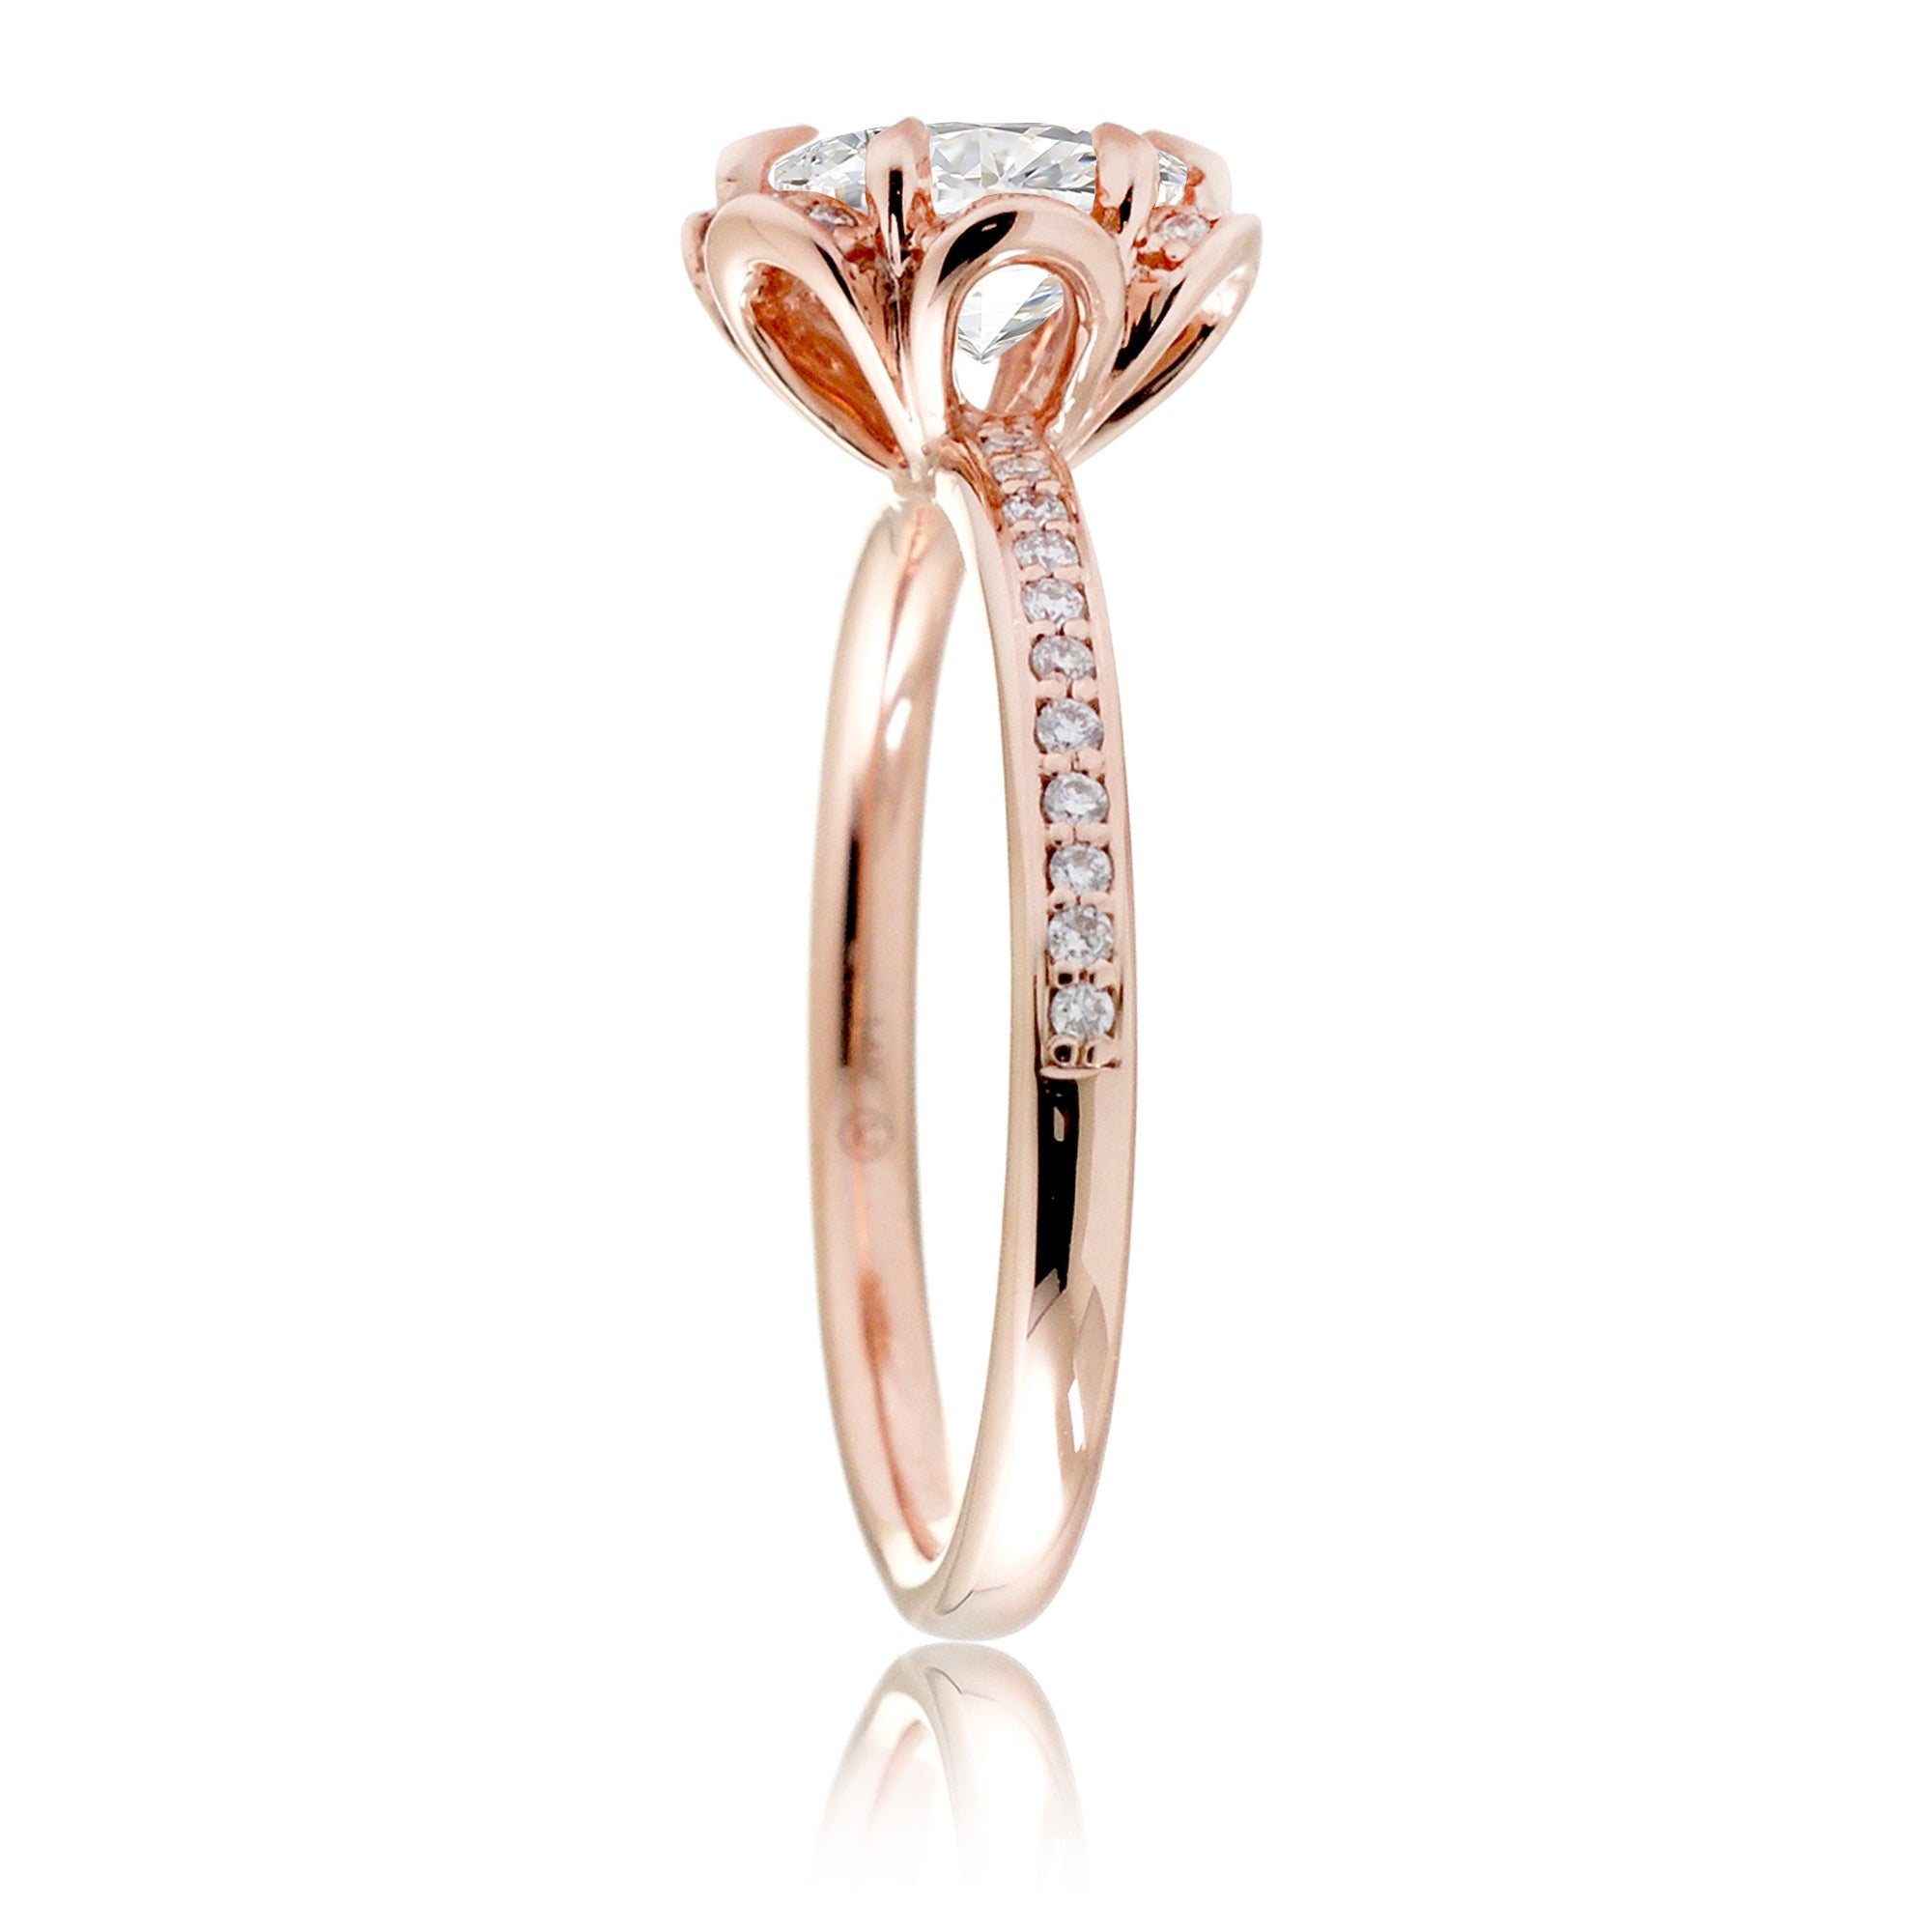 Flower design diamond engagement ring rose gold